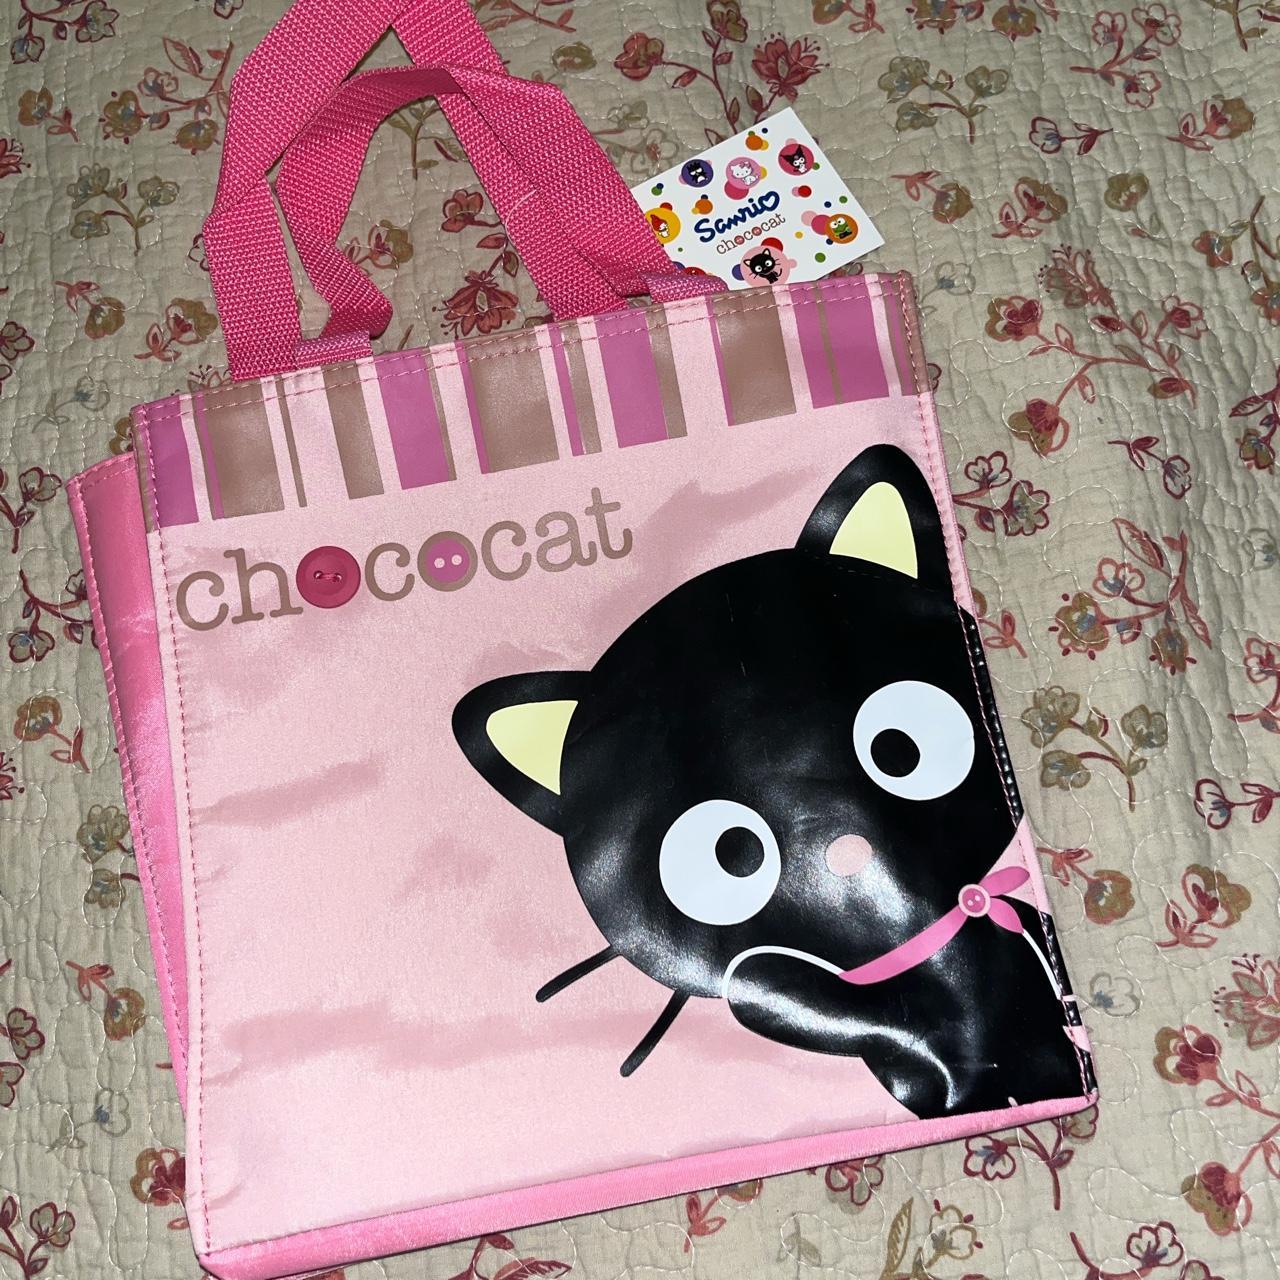 Chococat Dot Tote Bag